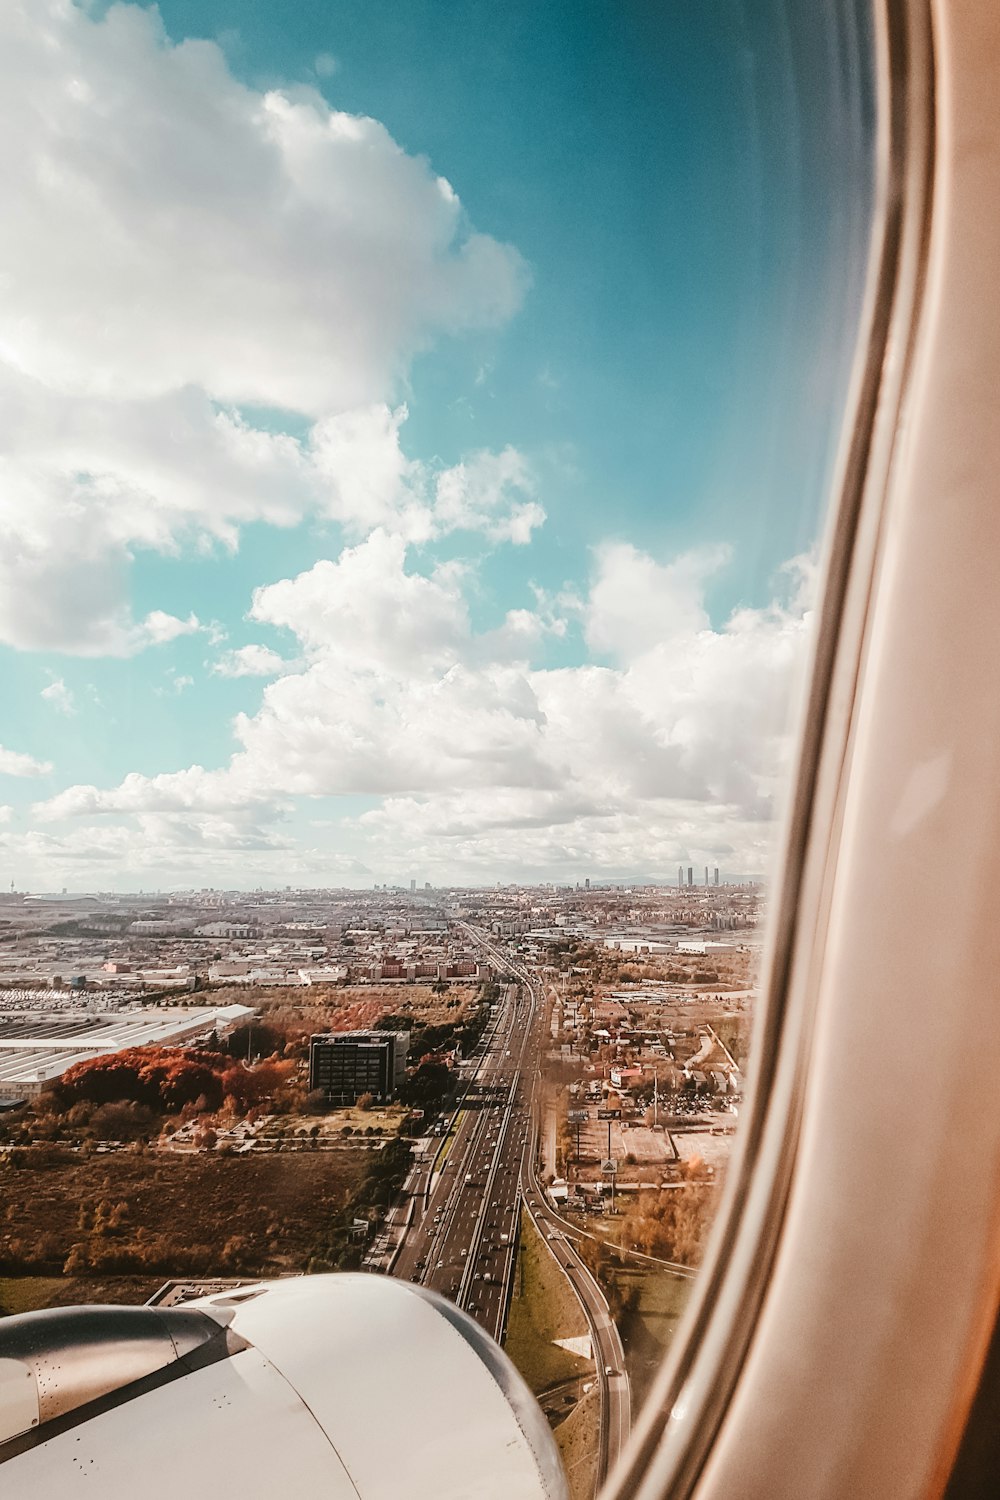 Vista de la ventana del avión de la carretera y los edificios durante el día